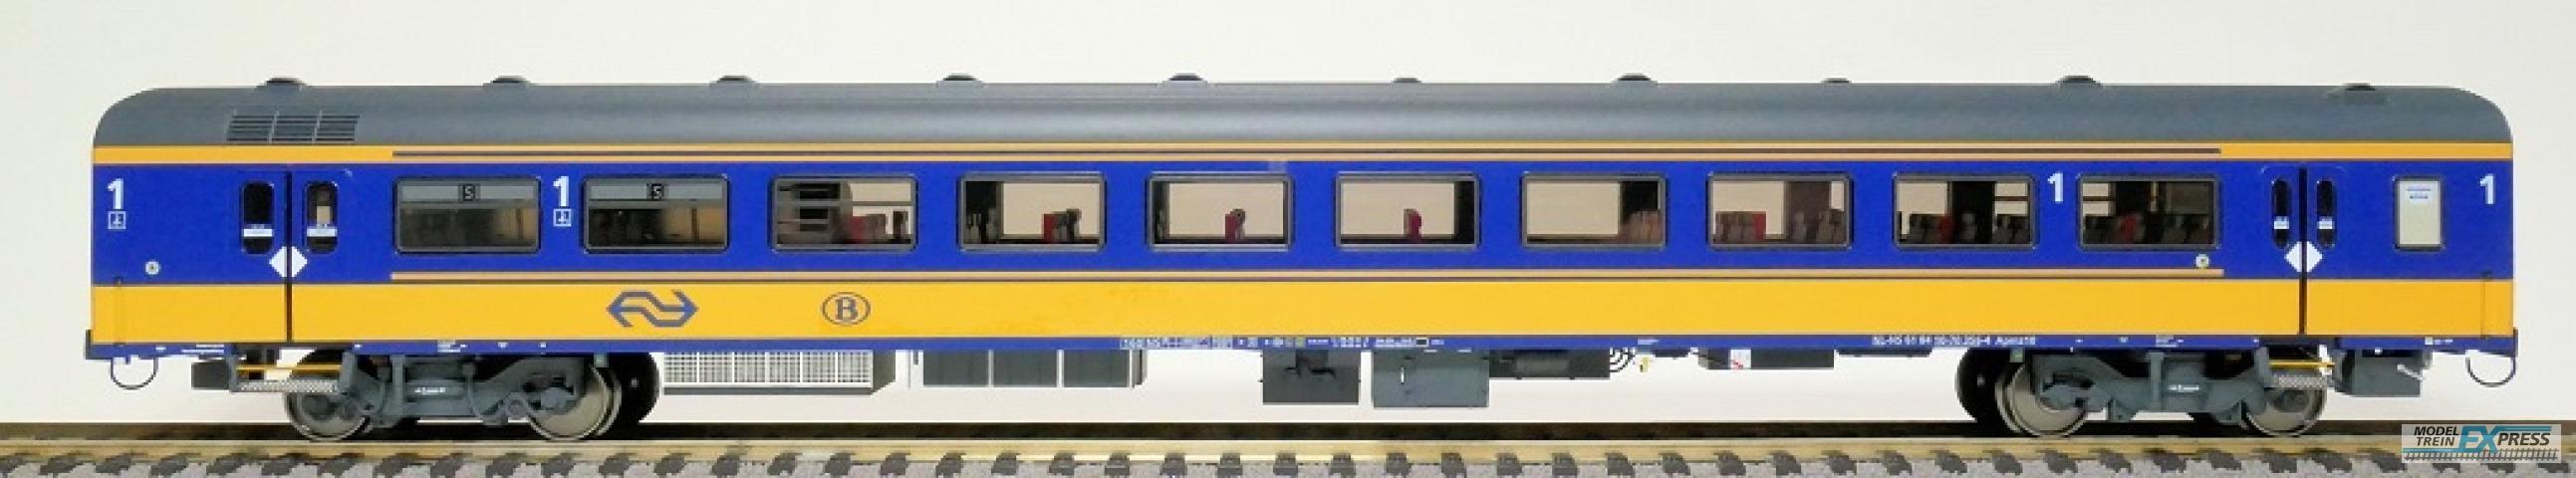 Exact-train 11029 Set NS ICRm Garnitur 2 (Amsterdam - Brussel) für die Hsl-Strecke eingesetzt Reisezugwagen Apmz10 ( Farbe Gelb / Blau), Ep. VI